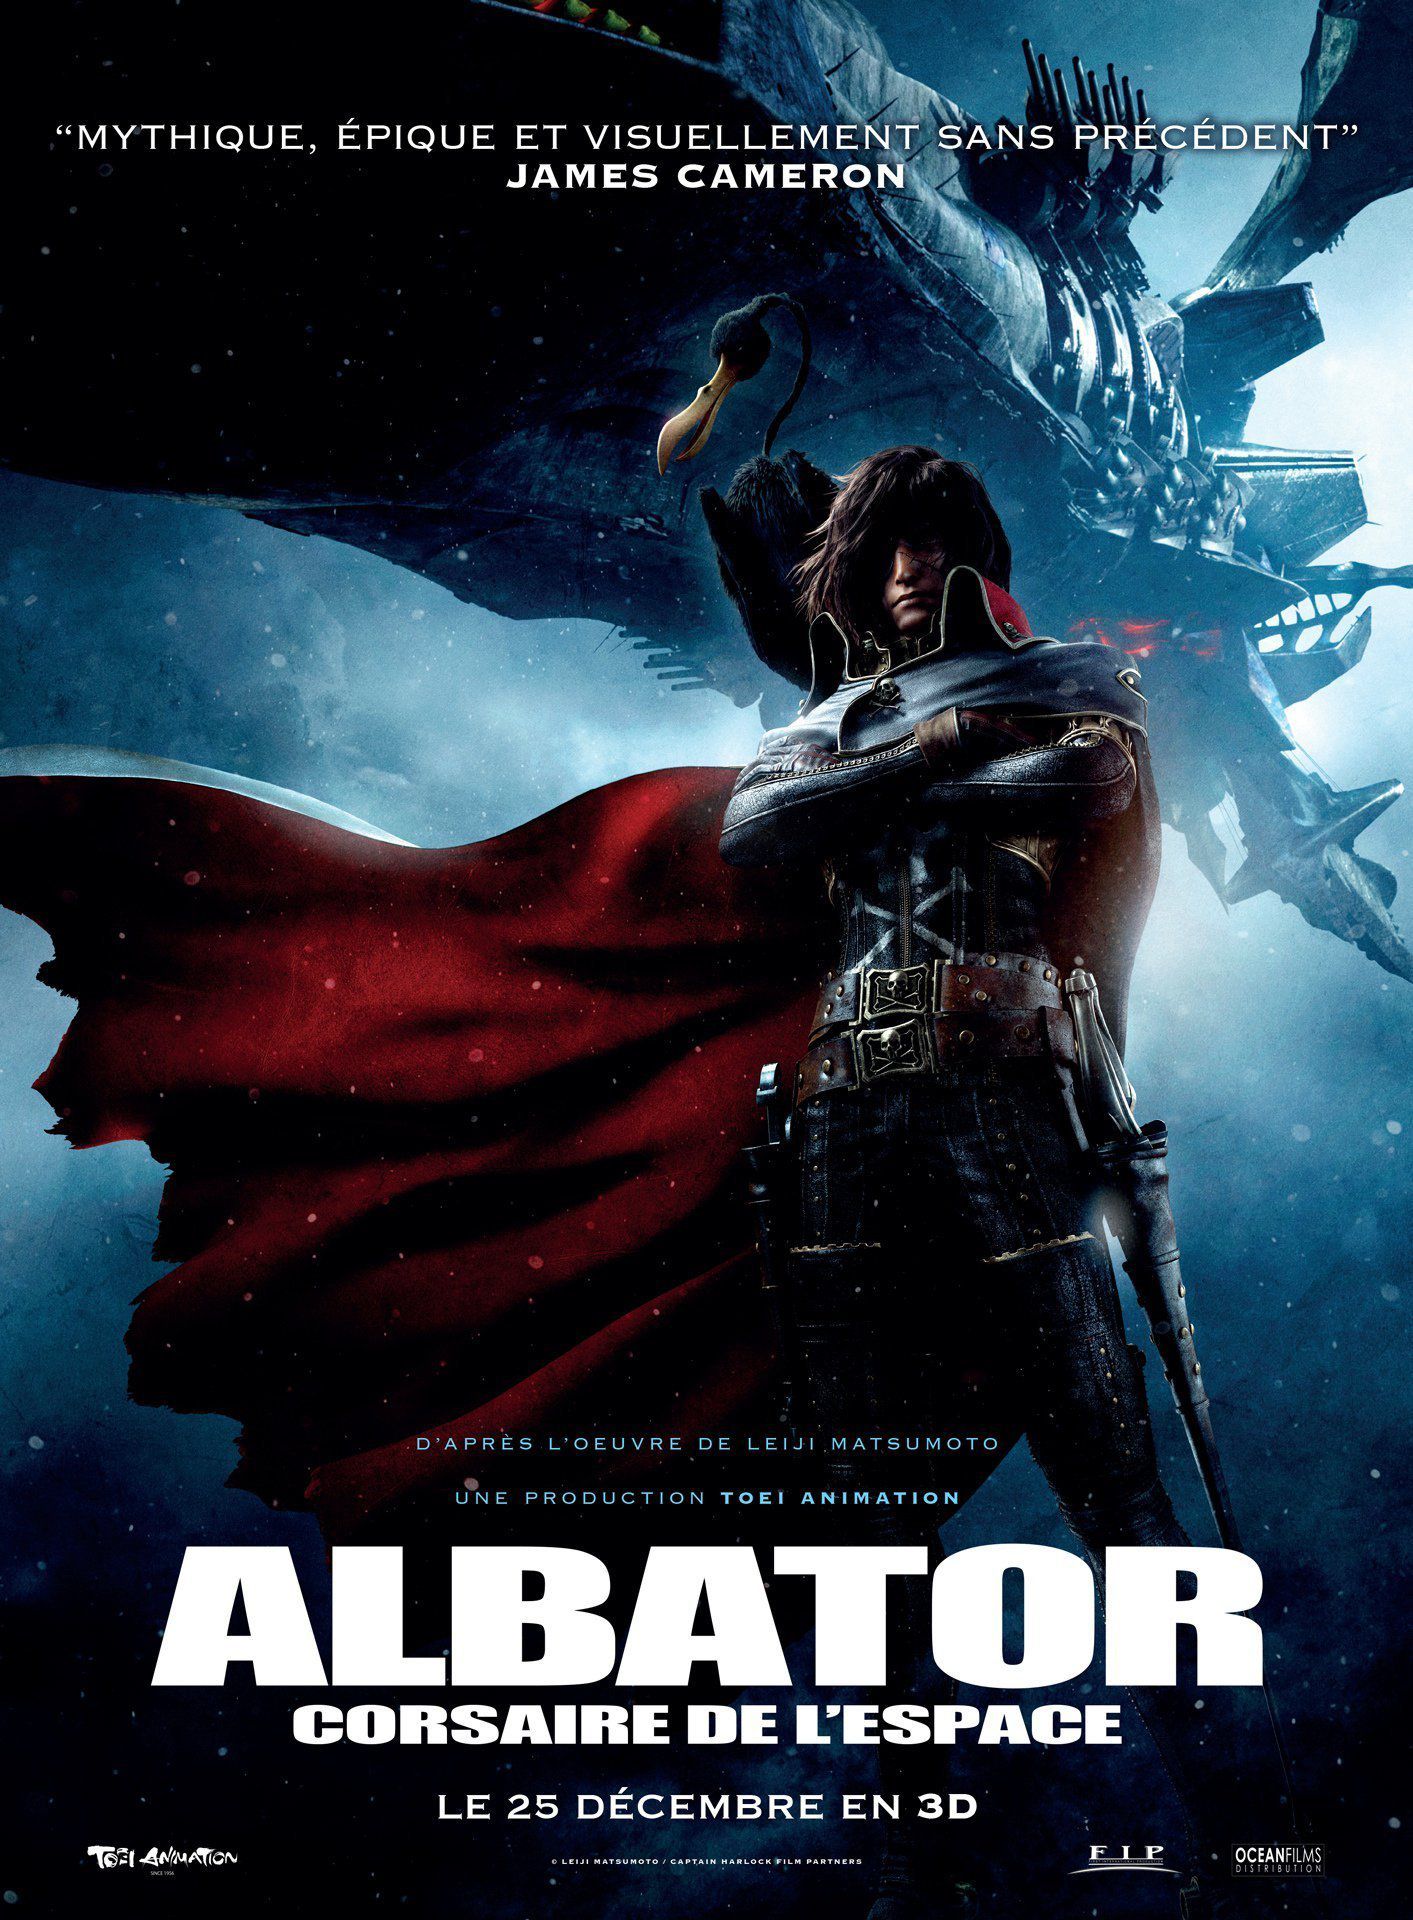 Albator, corsaire de l'espace - Long-métrage d'animation (2013)